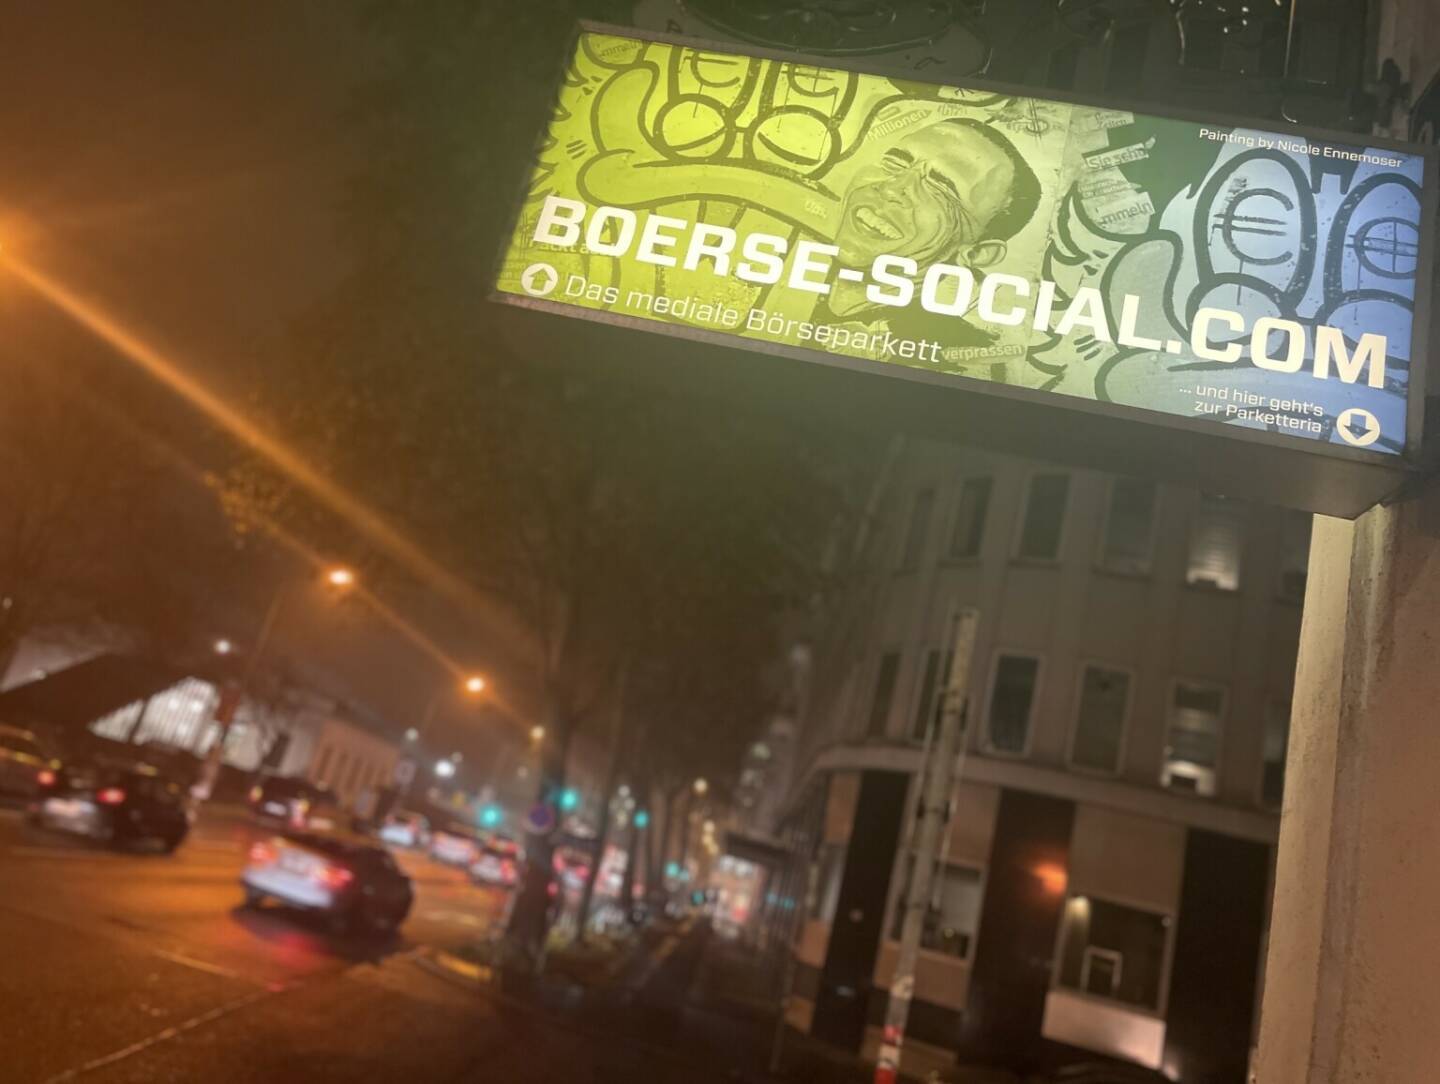 Yes Börse Social at night Traffic